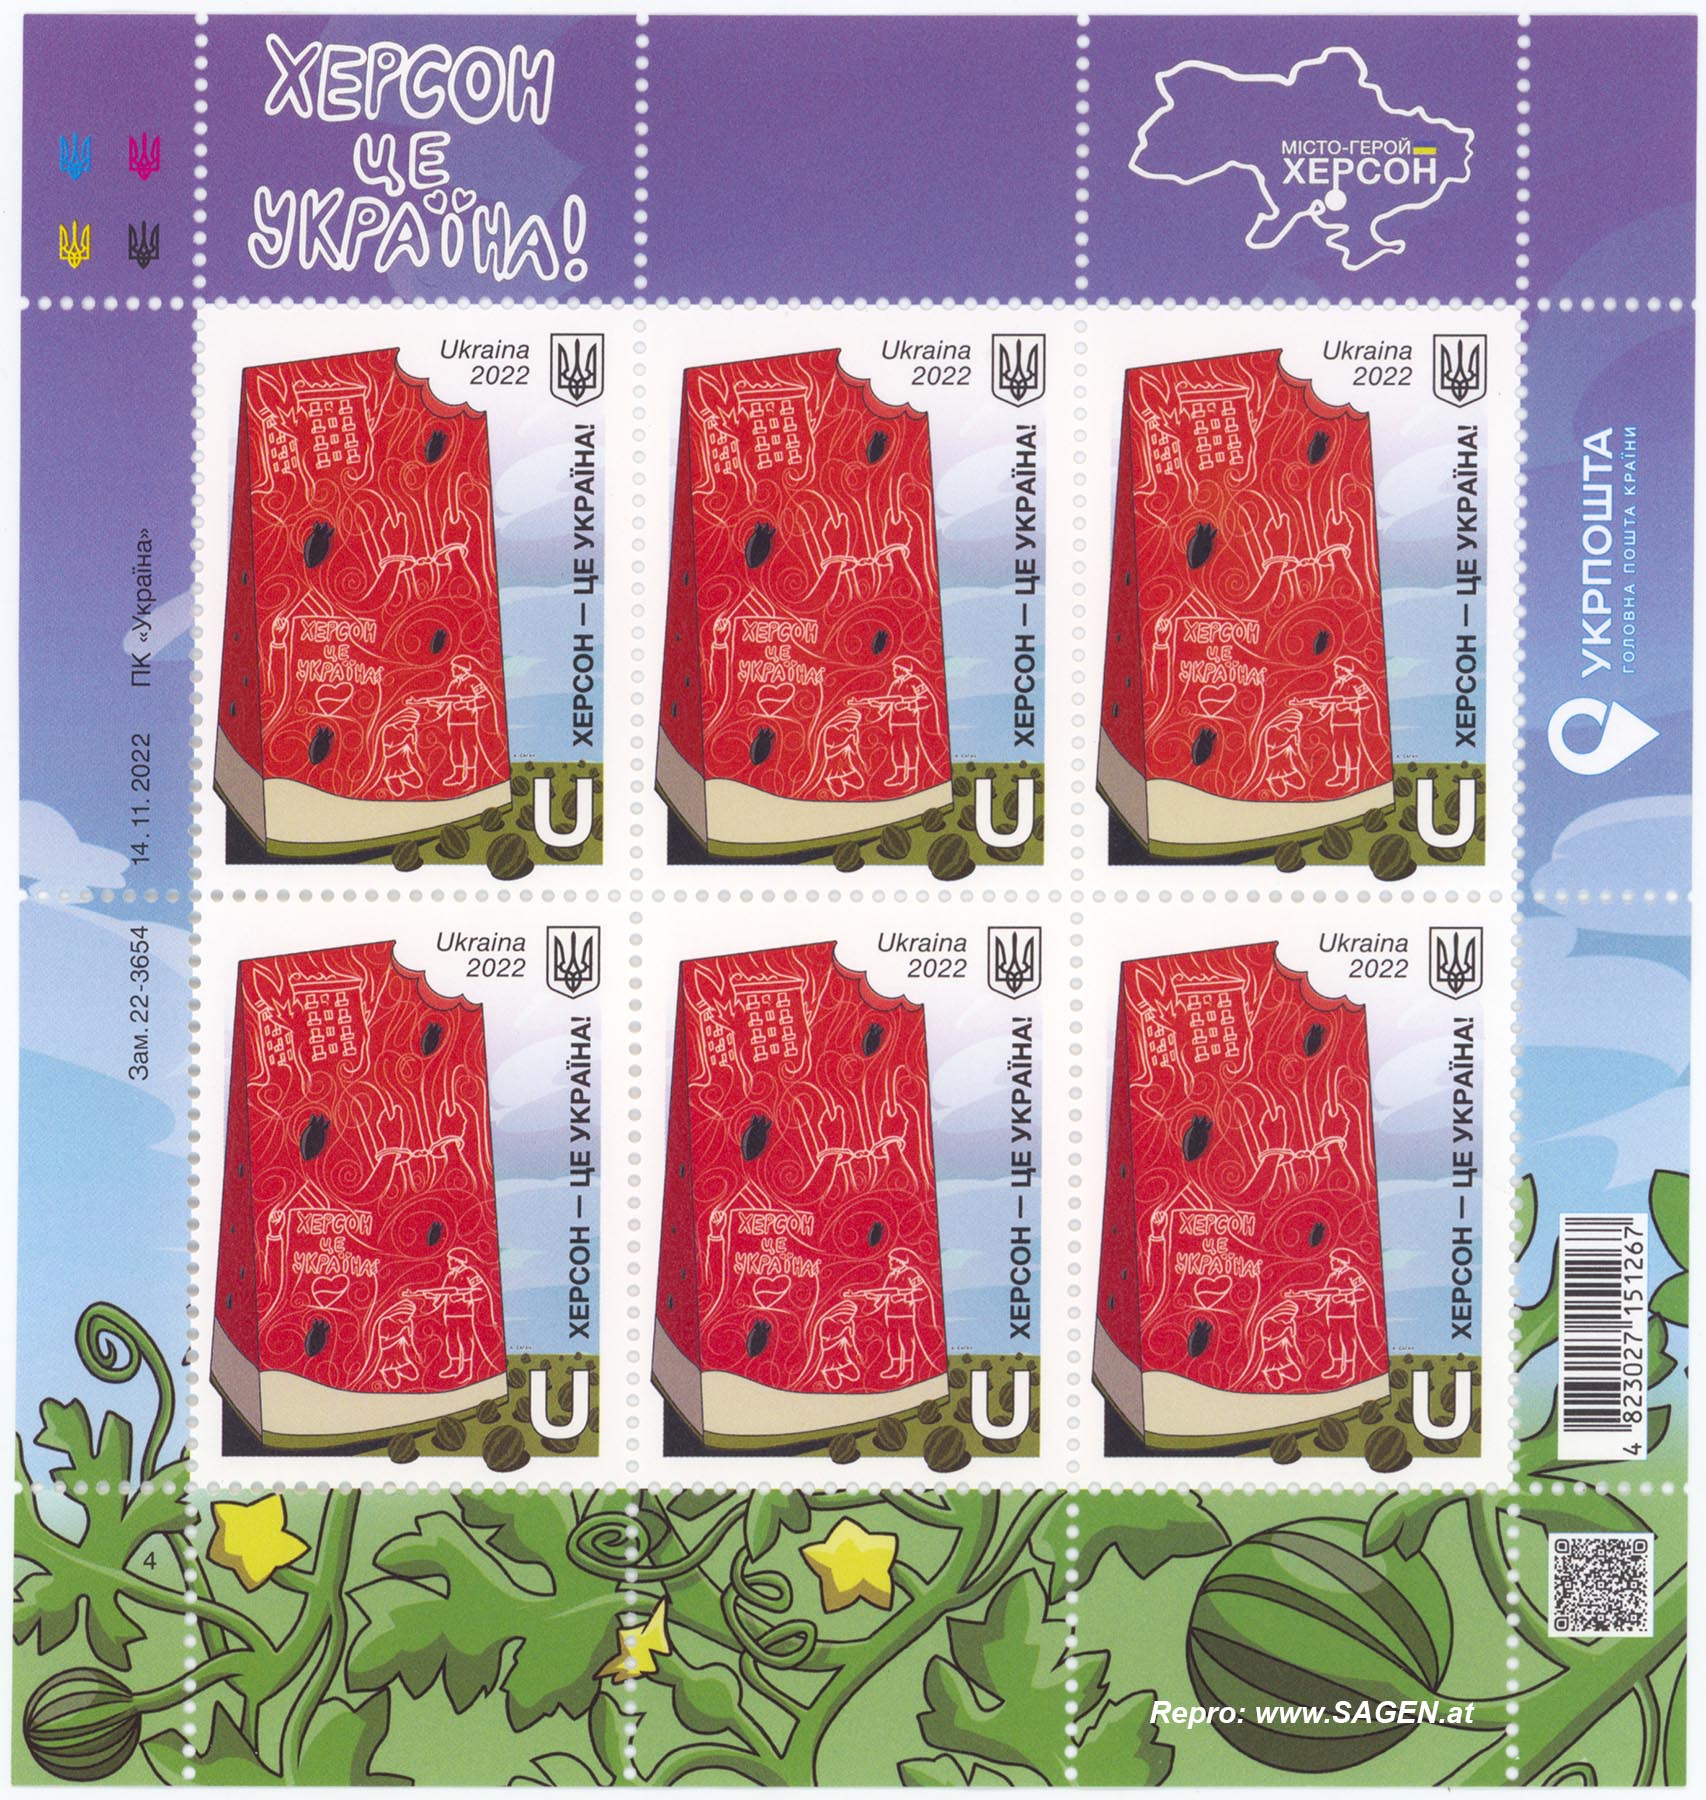 Ukraine Briefmarken, Cherson ist Ukraine